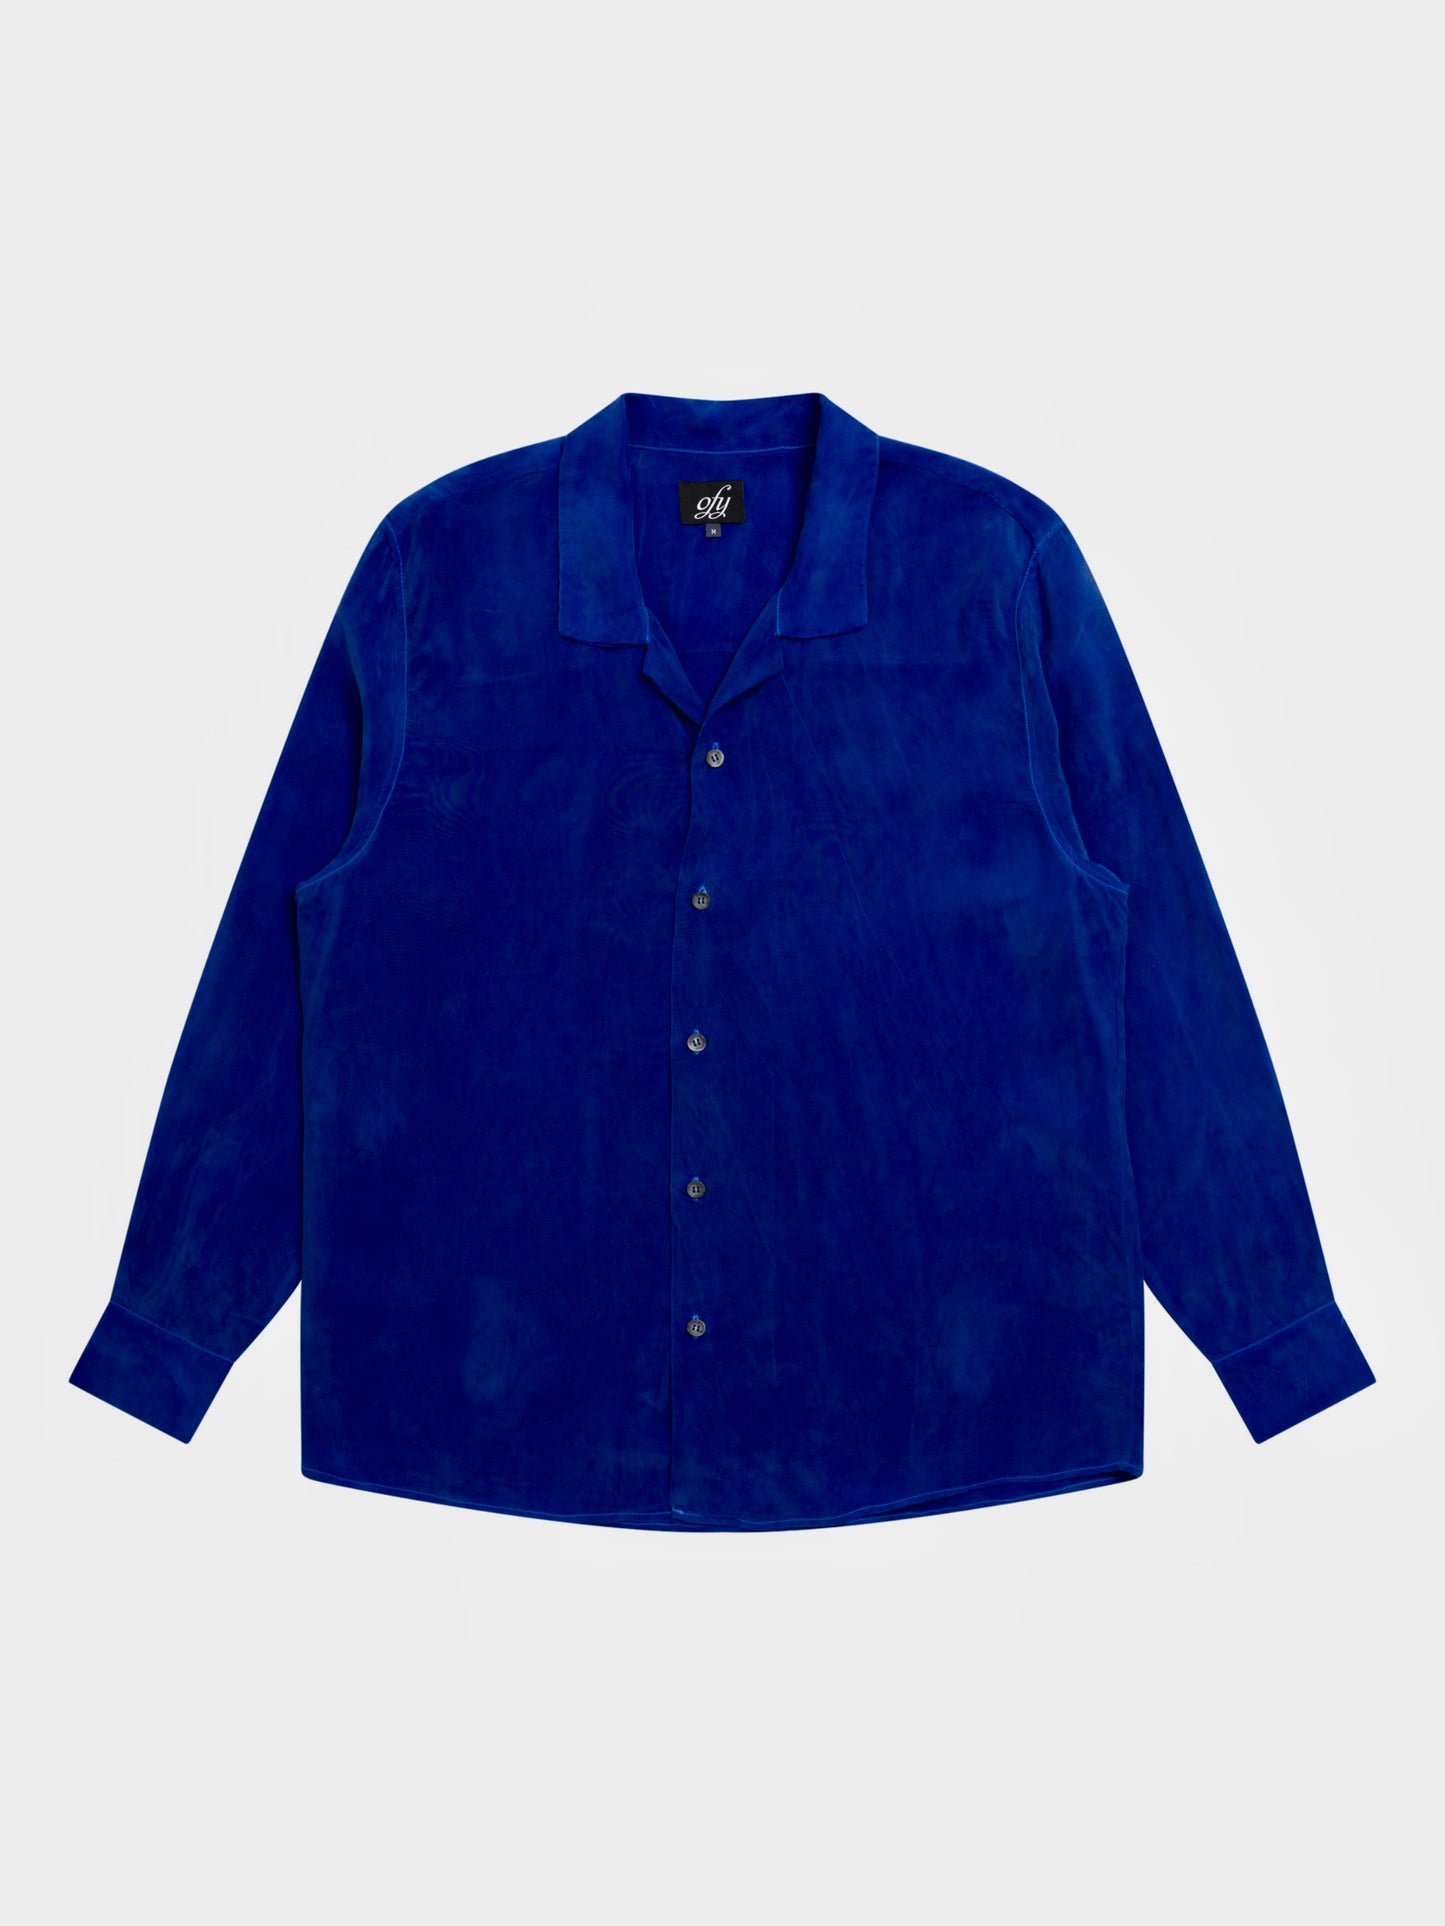 Iggy L/S Shirt - Bluing